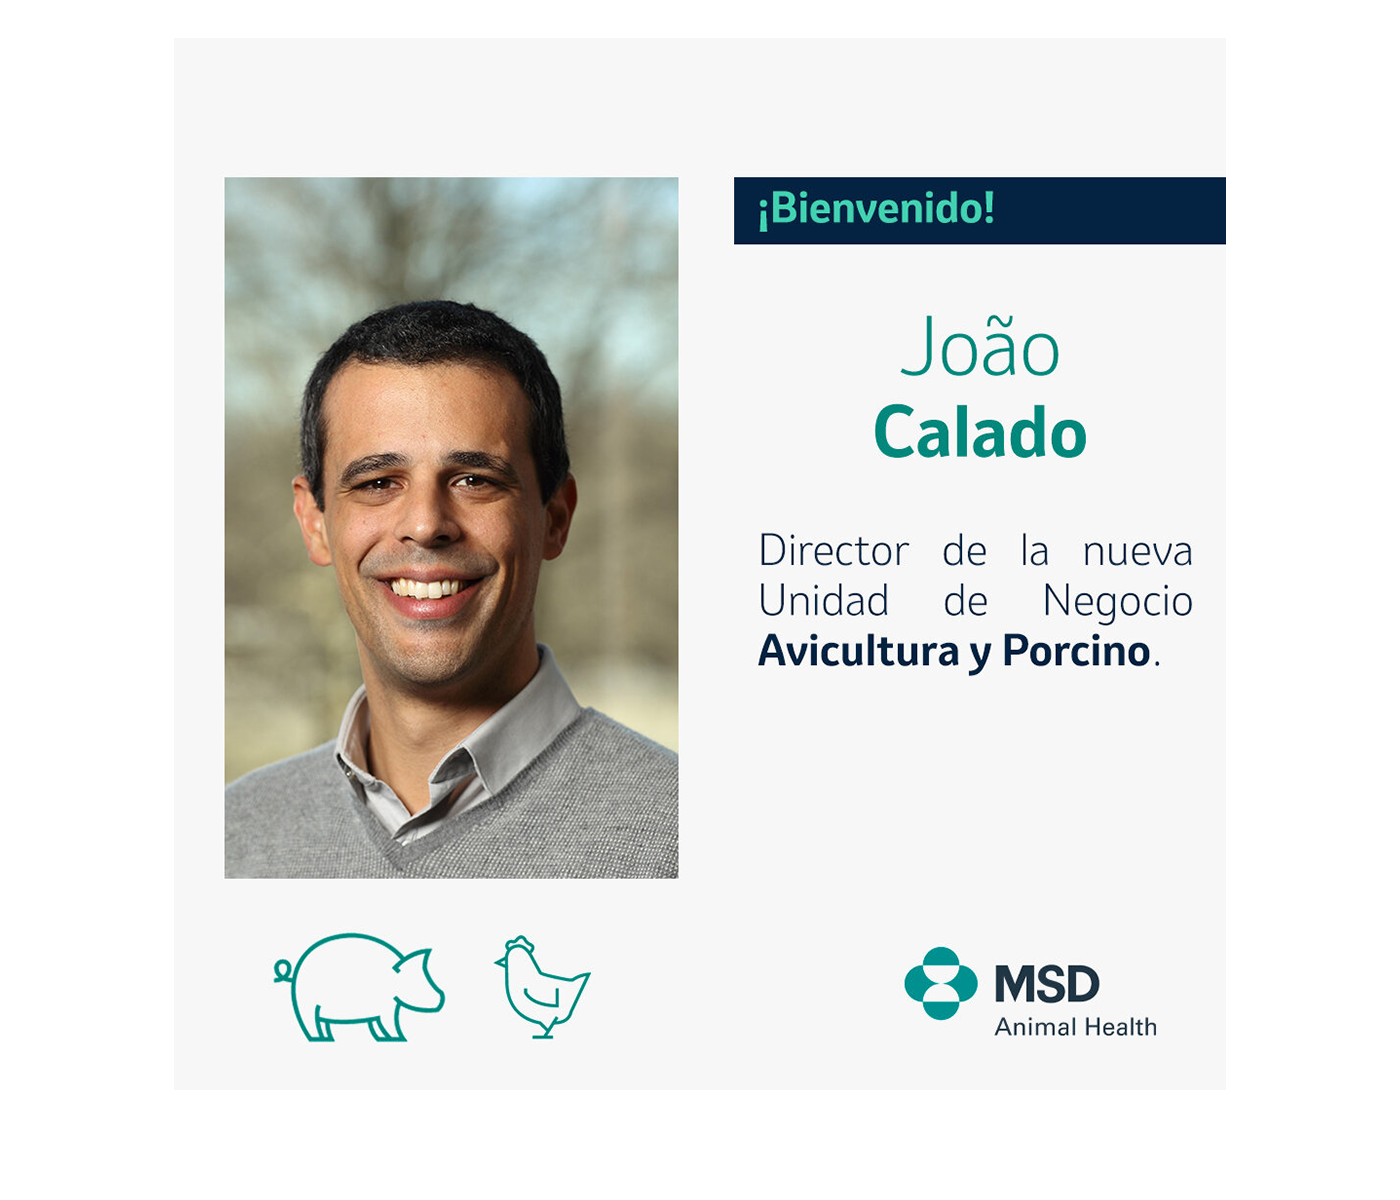 João Calado, nuevo director de la Unidad de Negocio de Avicultura y Porcino en MSD Animal Health España